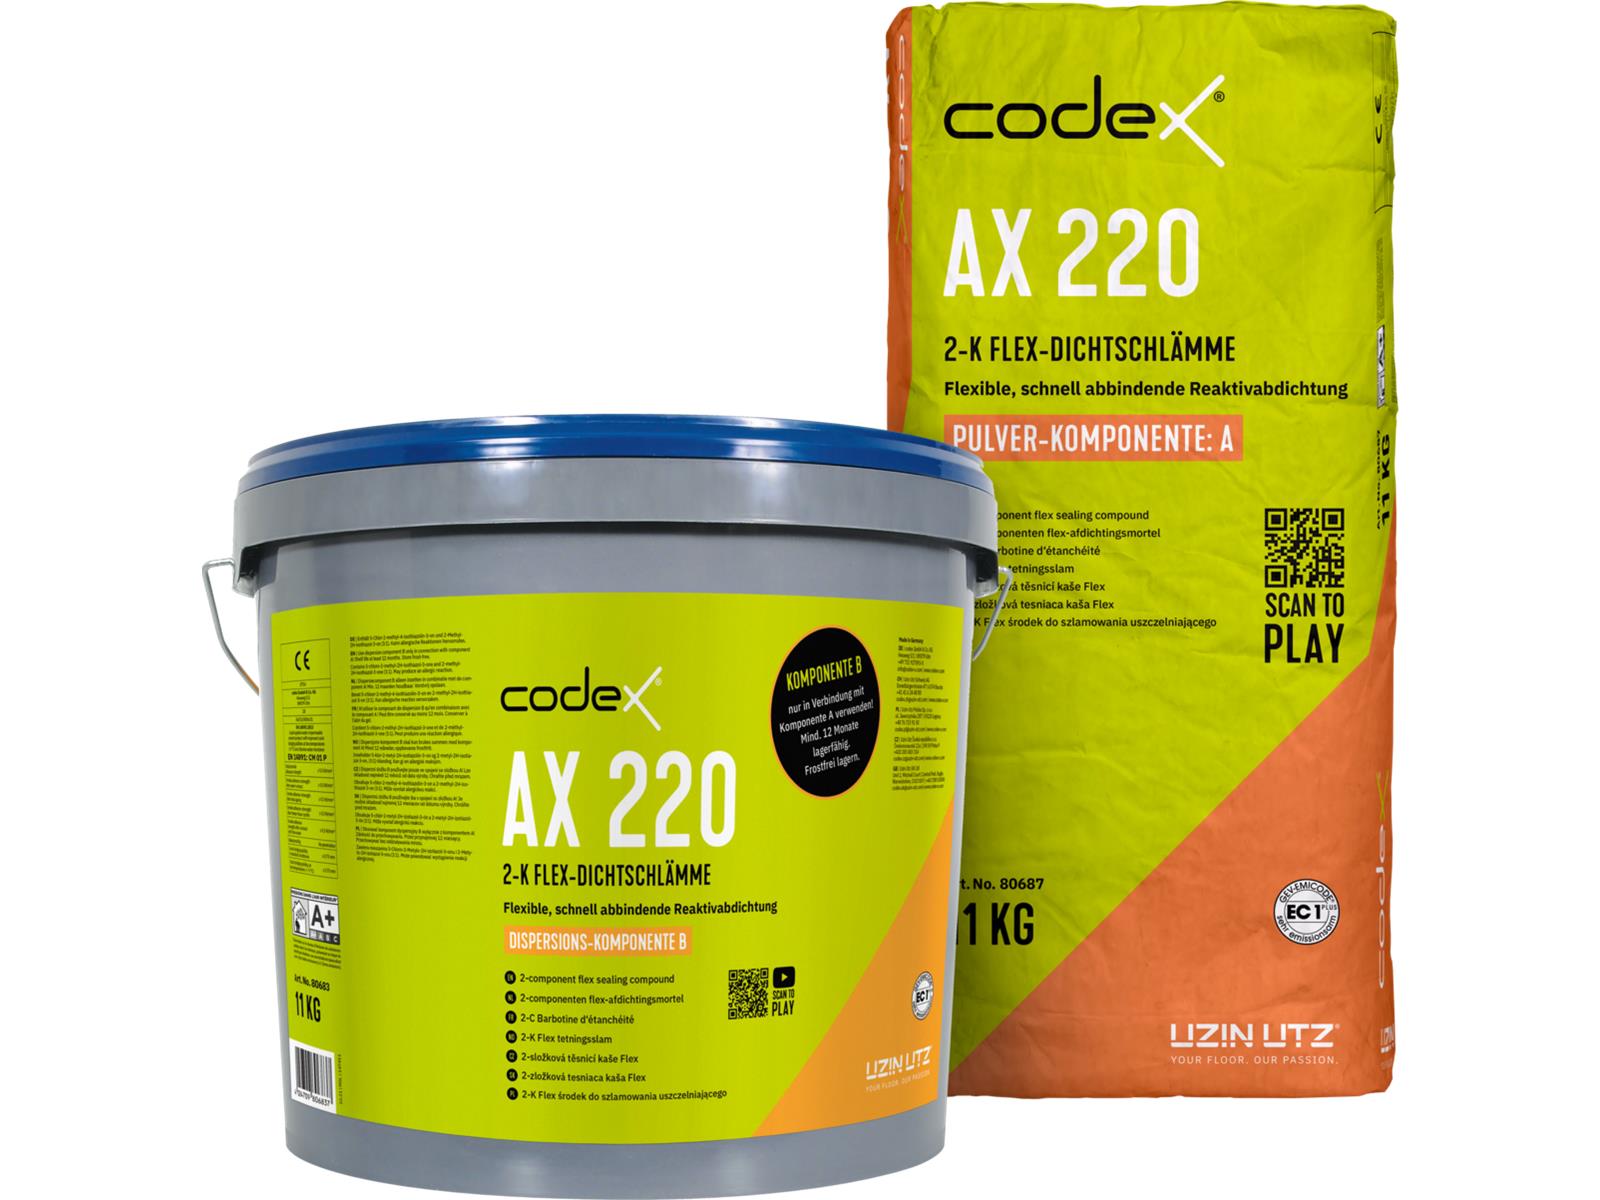 codex AX 220 A+B -22 kg